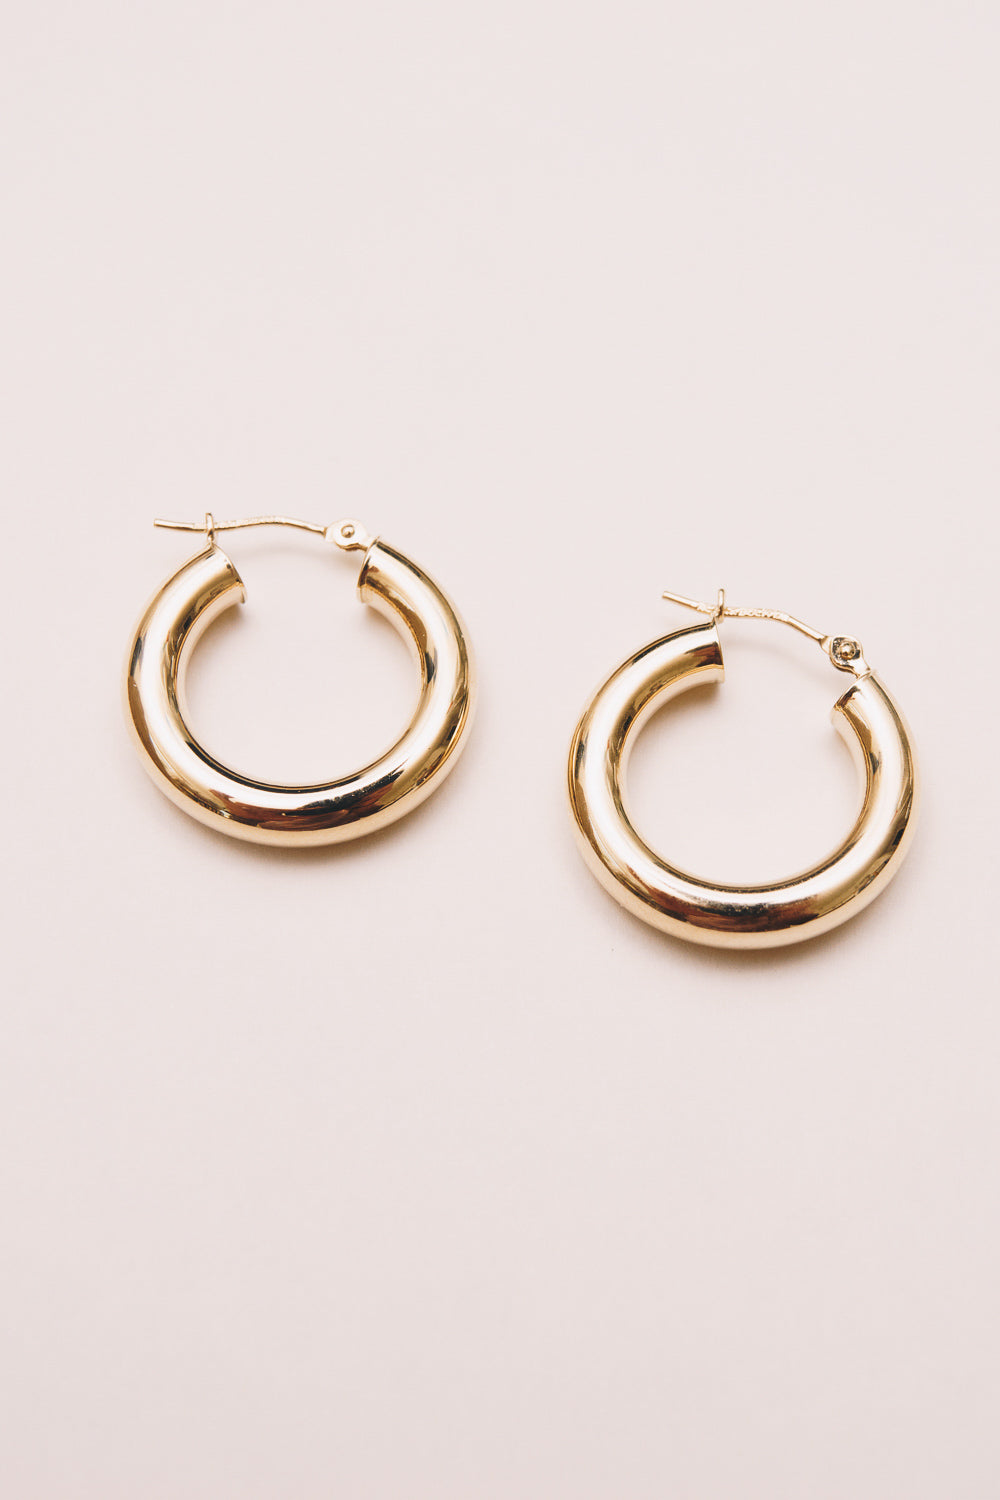 14k gold hoop earrings side by side